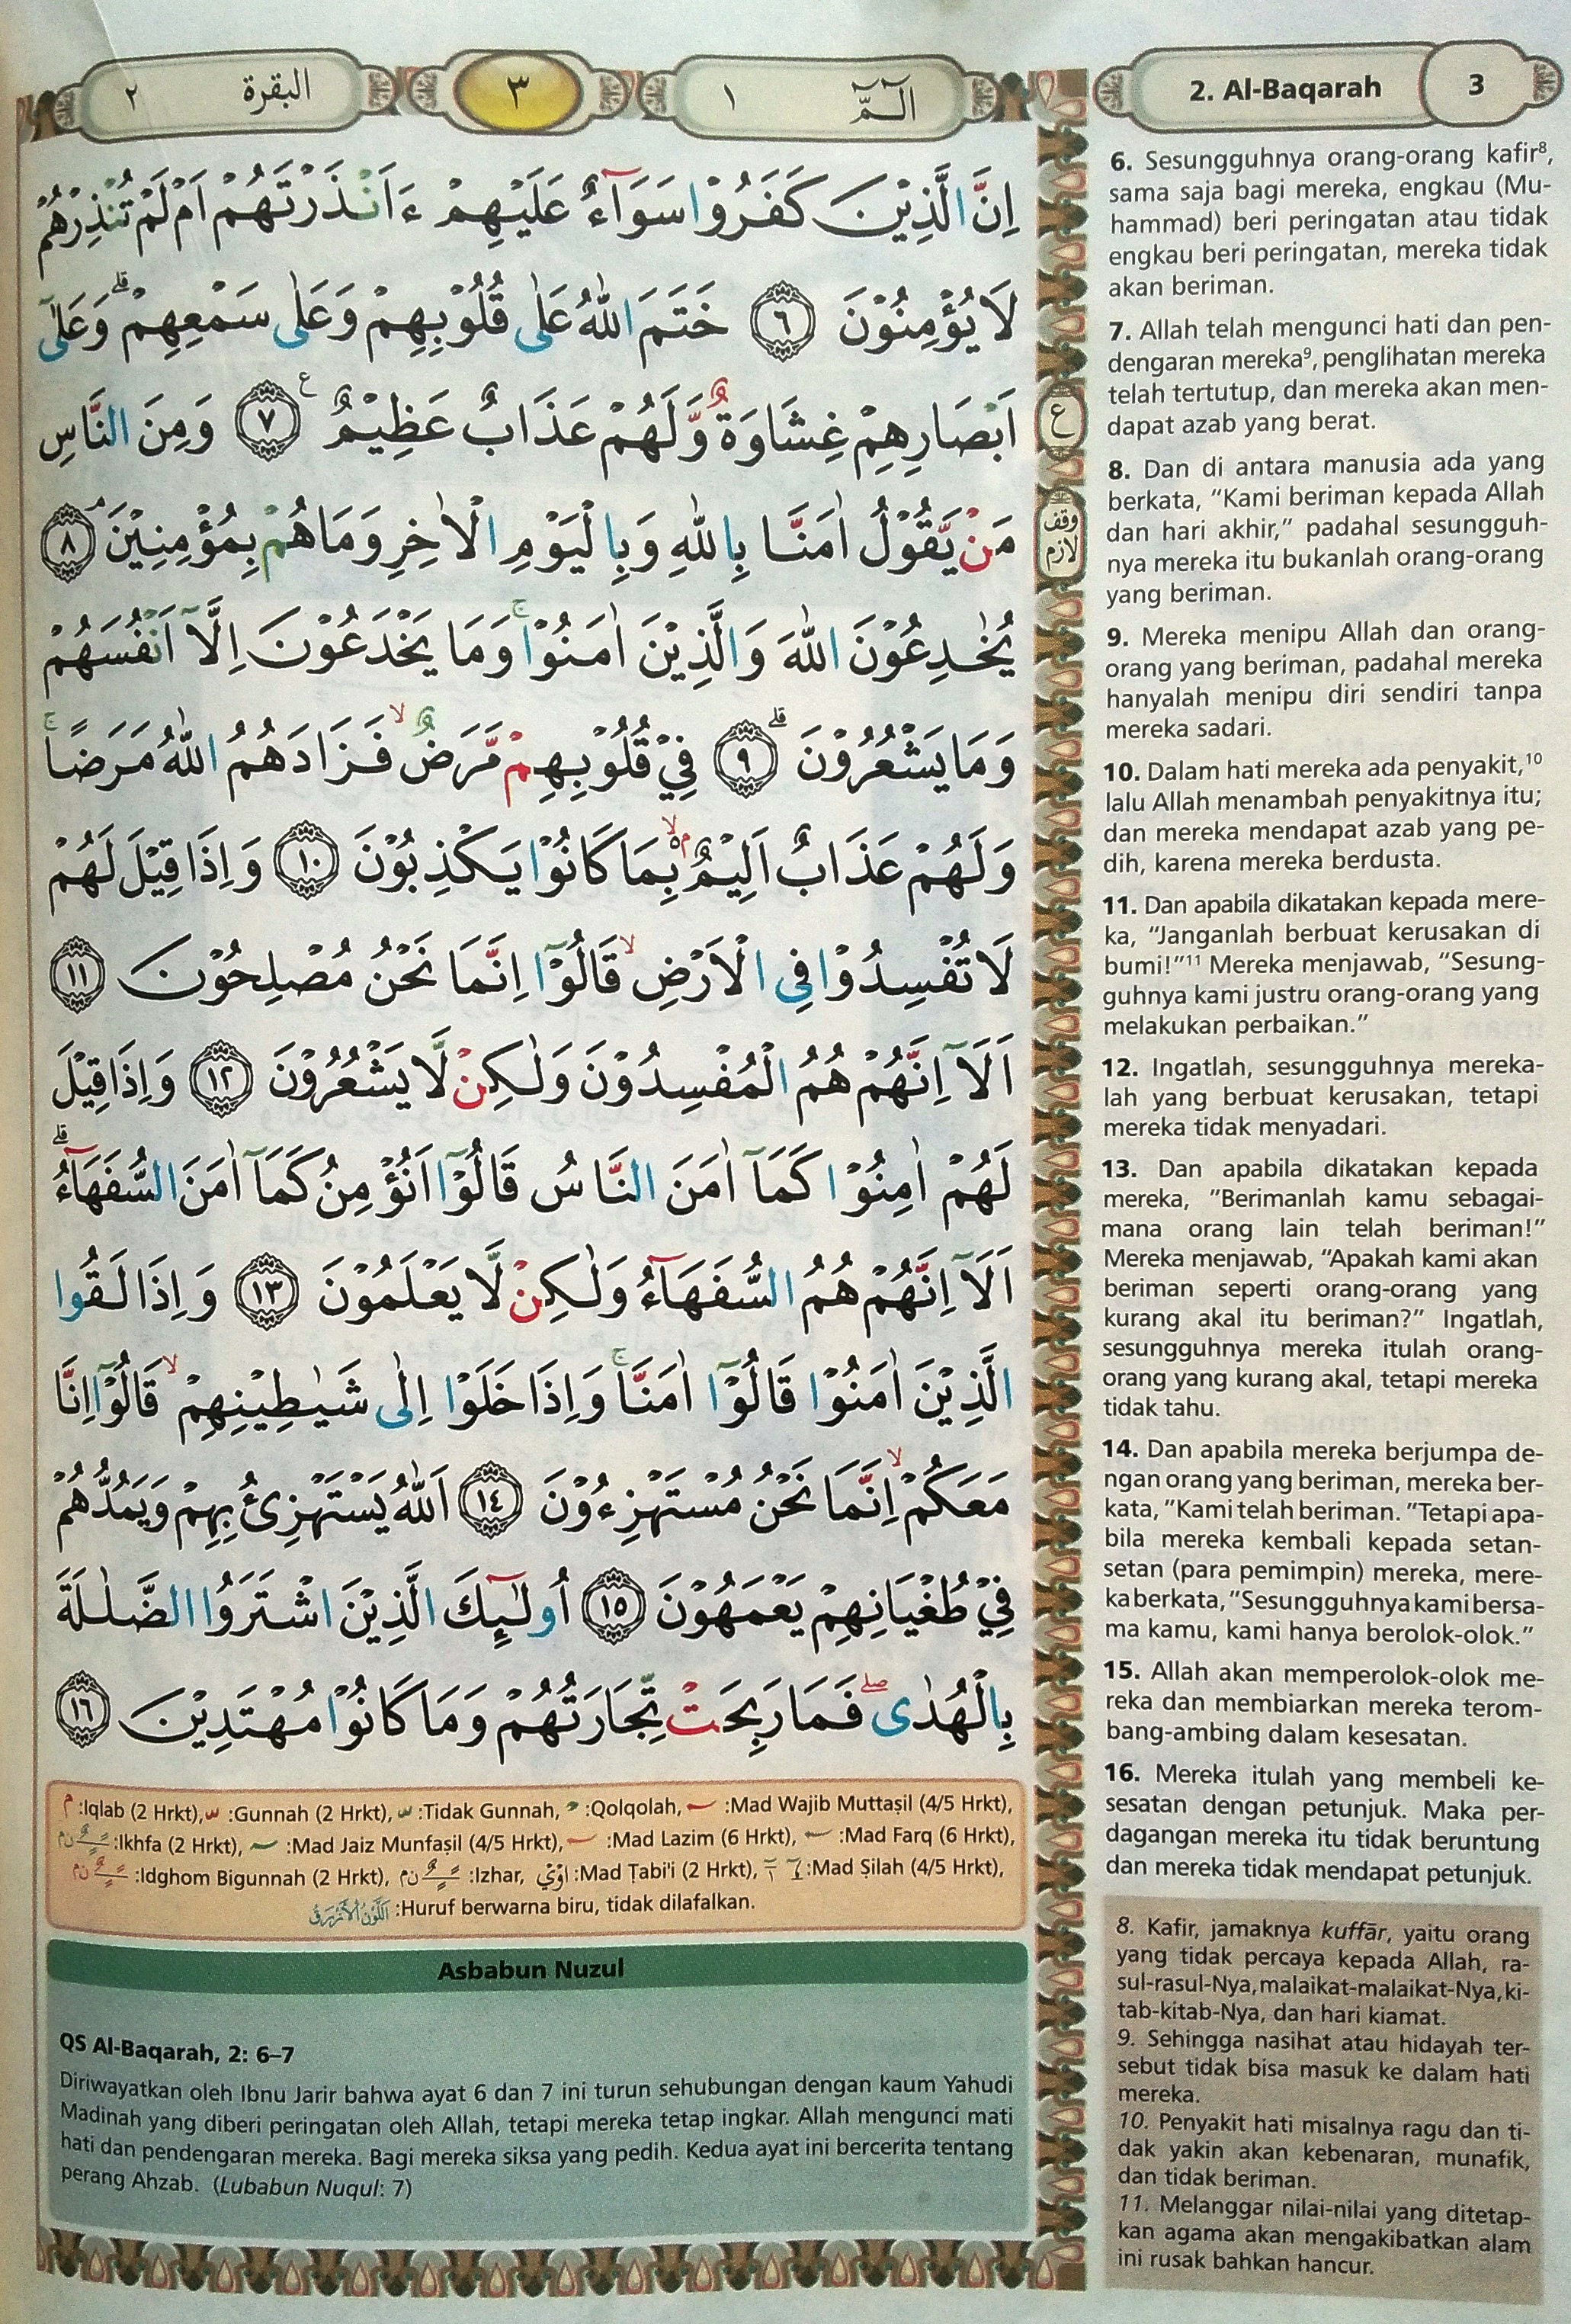 Al baqarah ayat 6-16